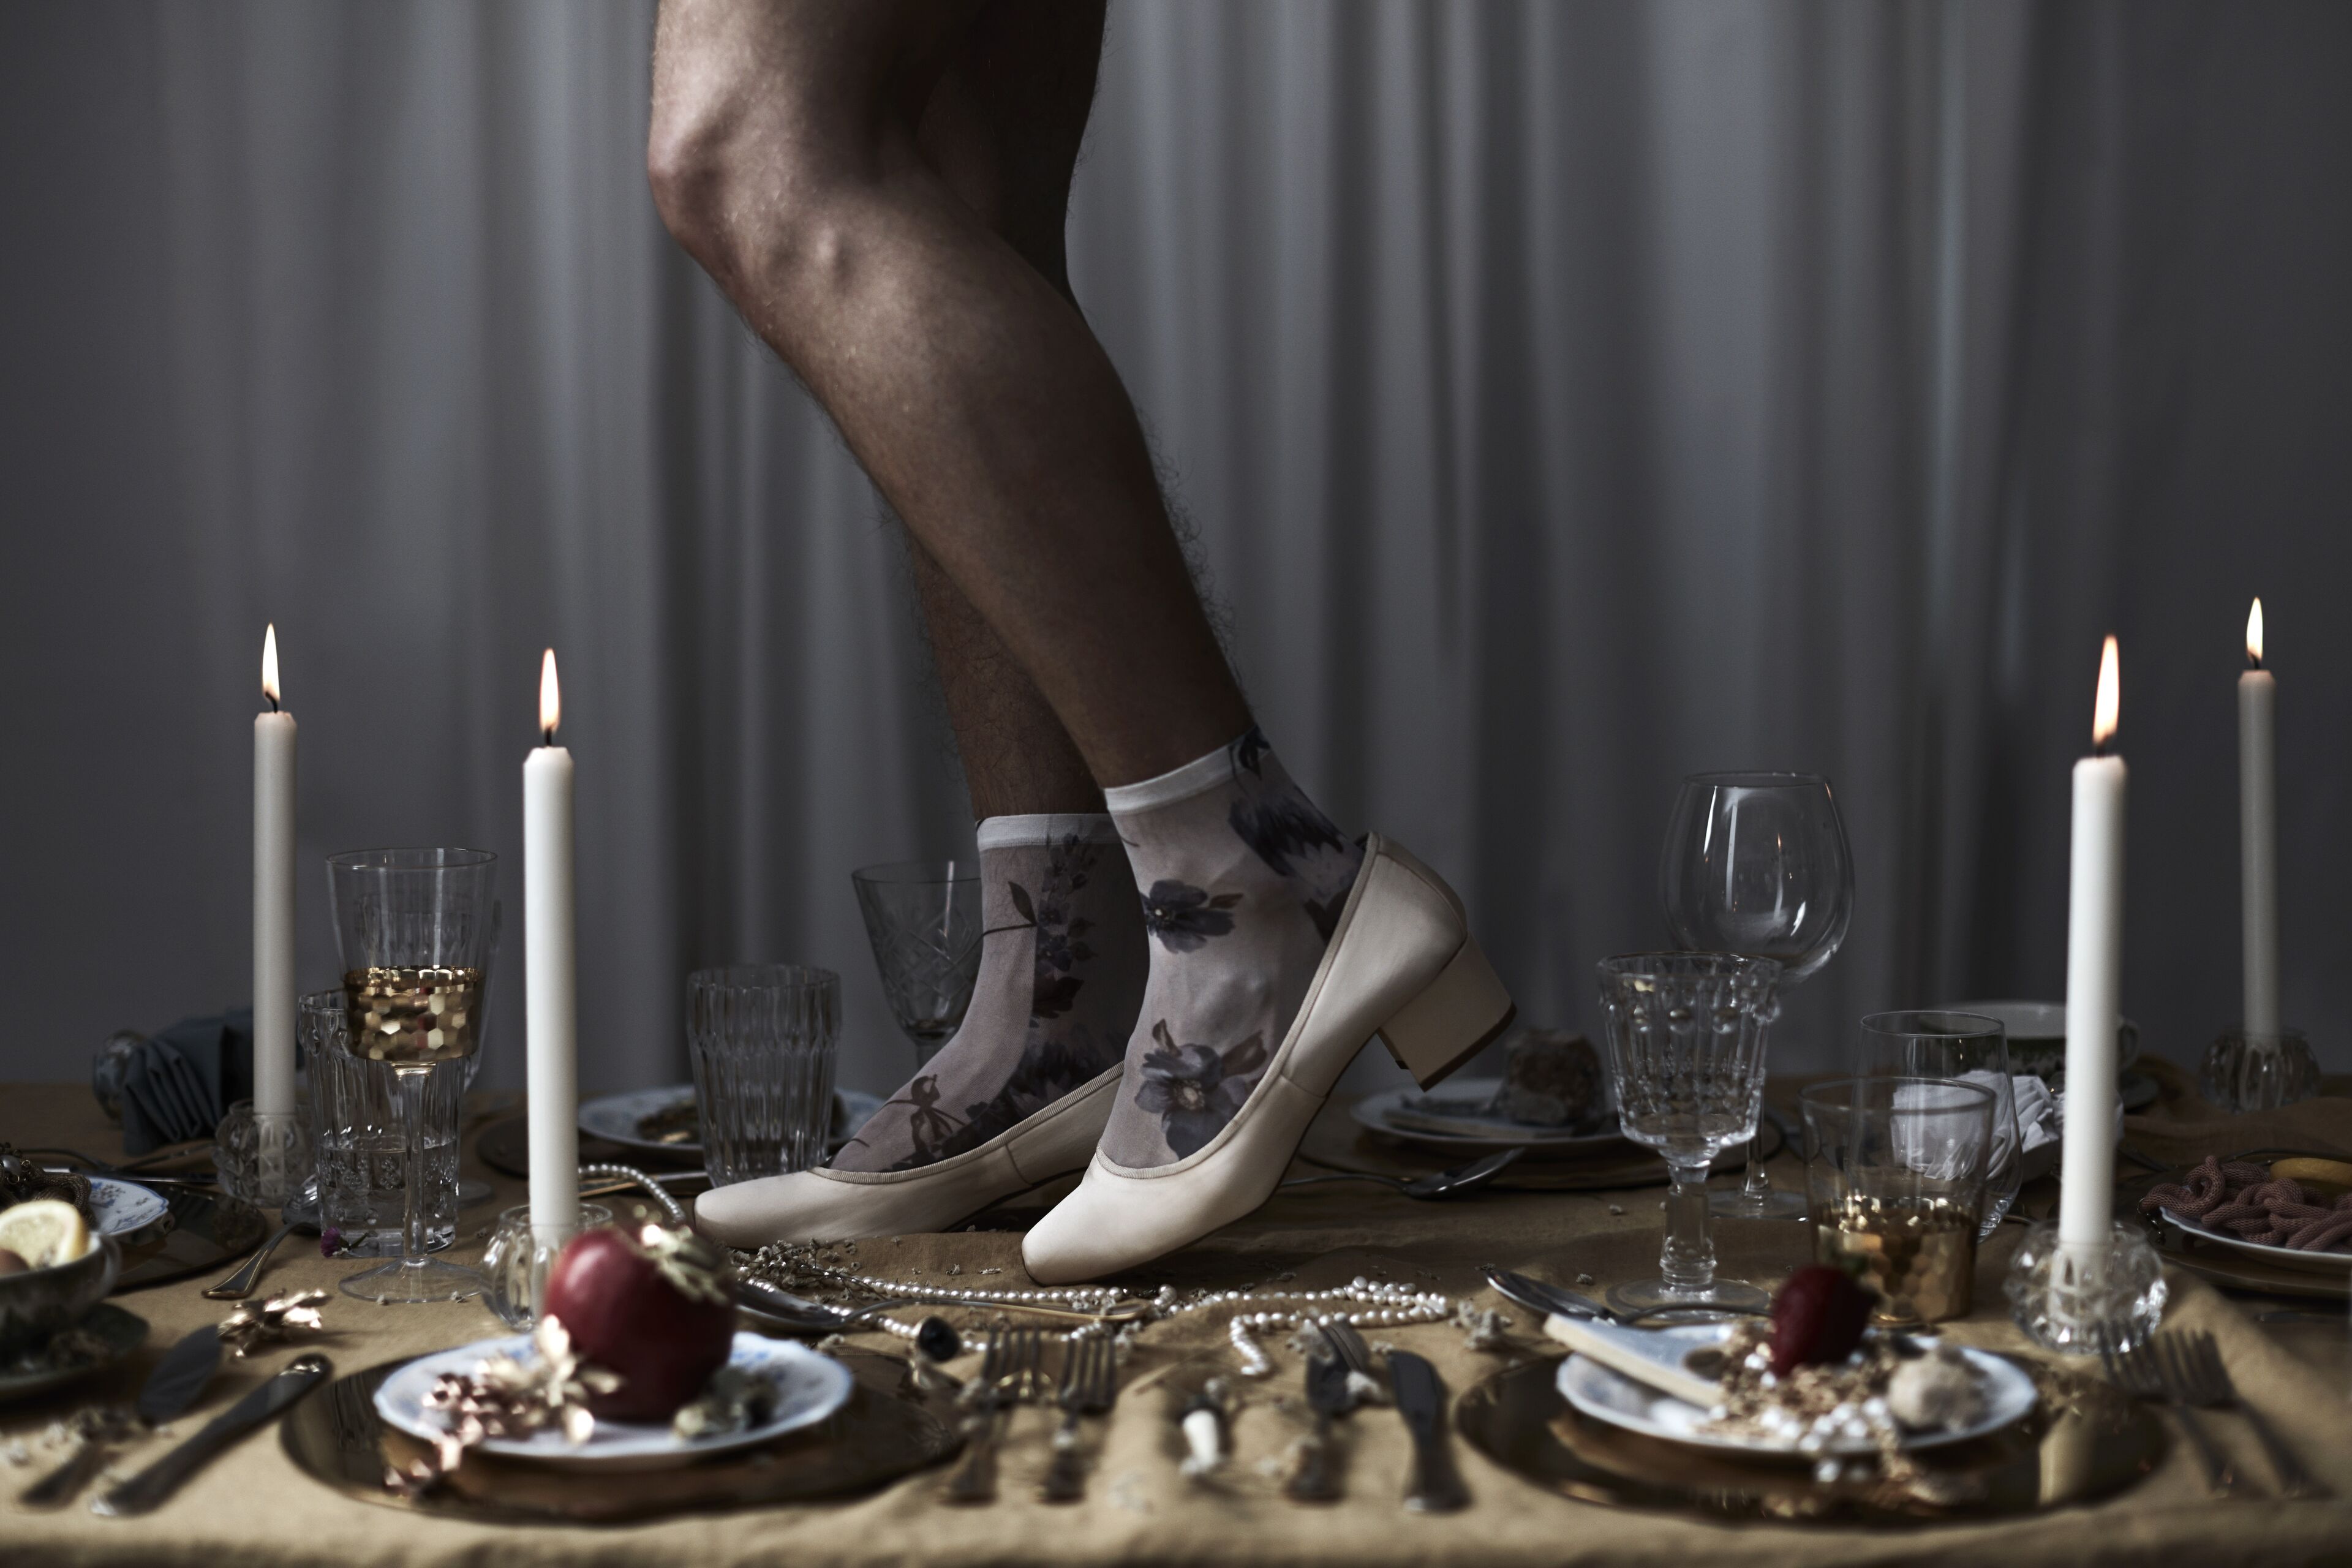 Piernas de una persona con calcetines florales y tacones sobre una mesa de cena con platos y velas, estableciendo un tono caprichoso.